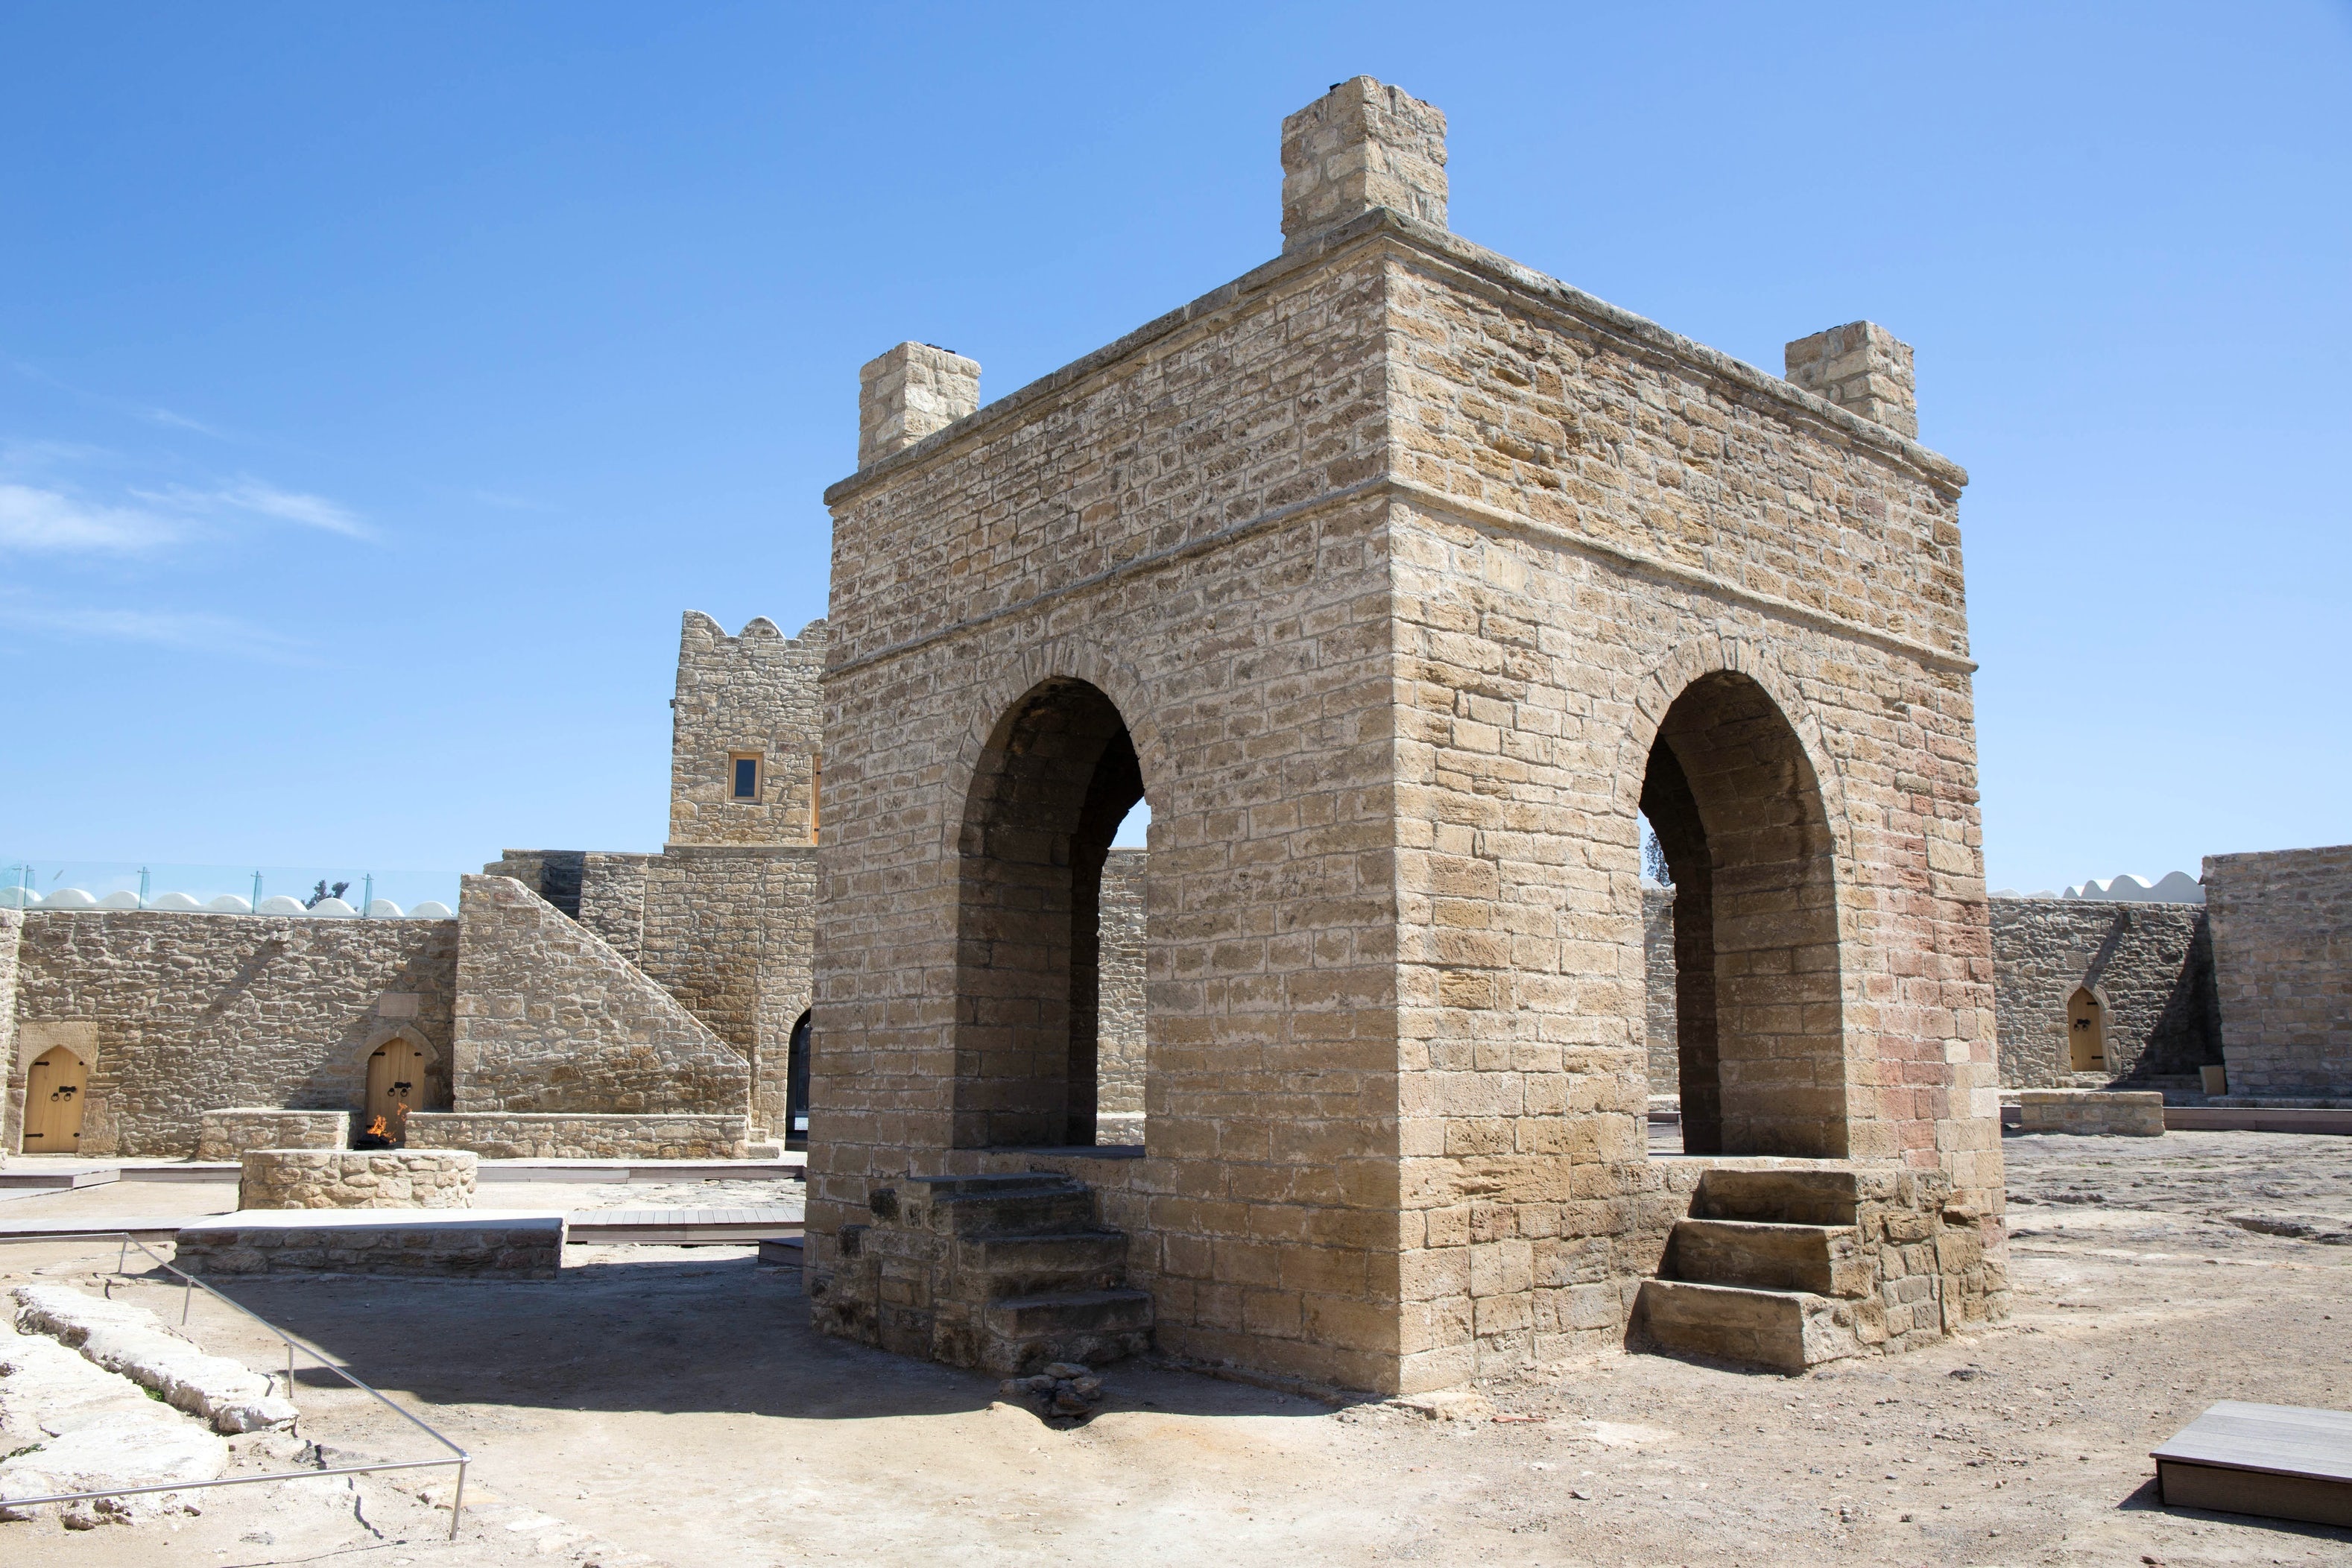 tourhub | Across Azerbaijan | Architectural Tour in Azerbaijan | 091876988635682